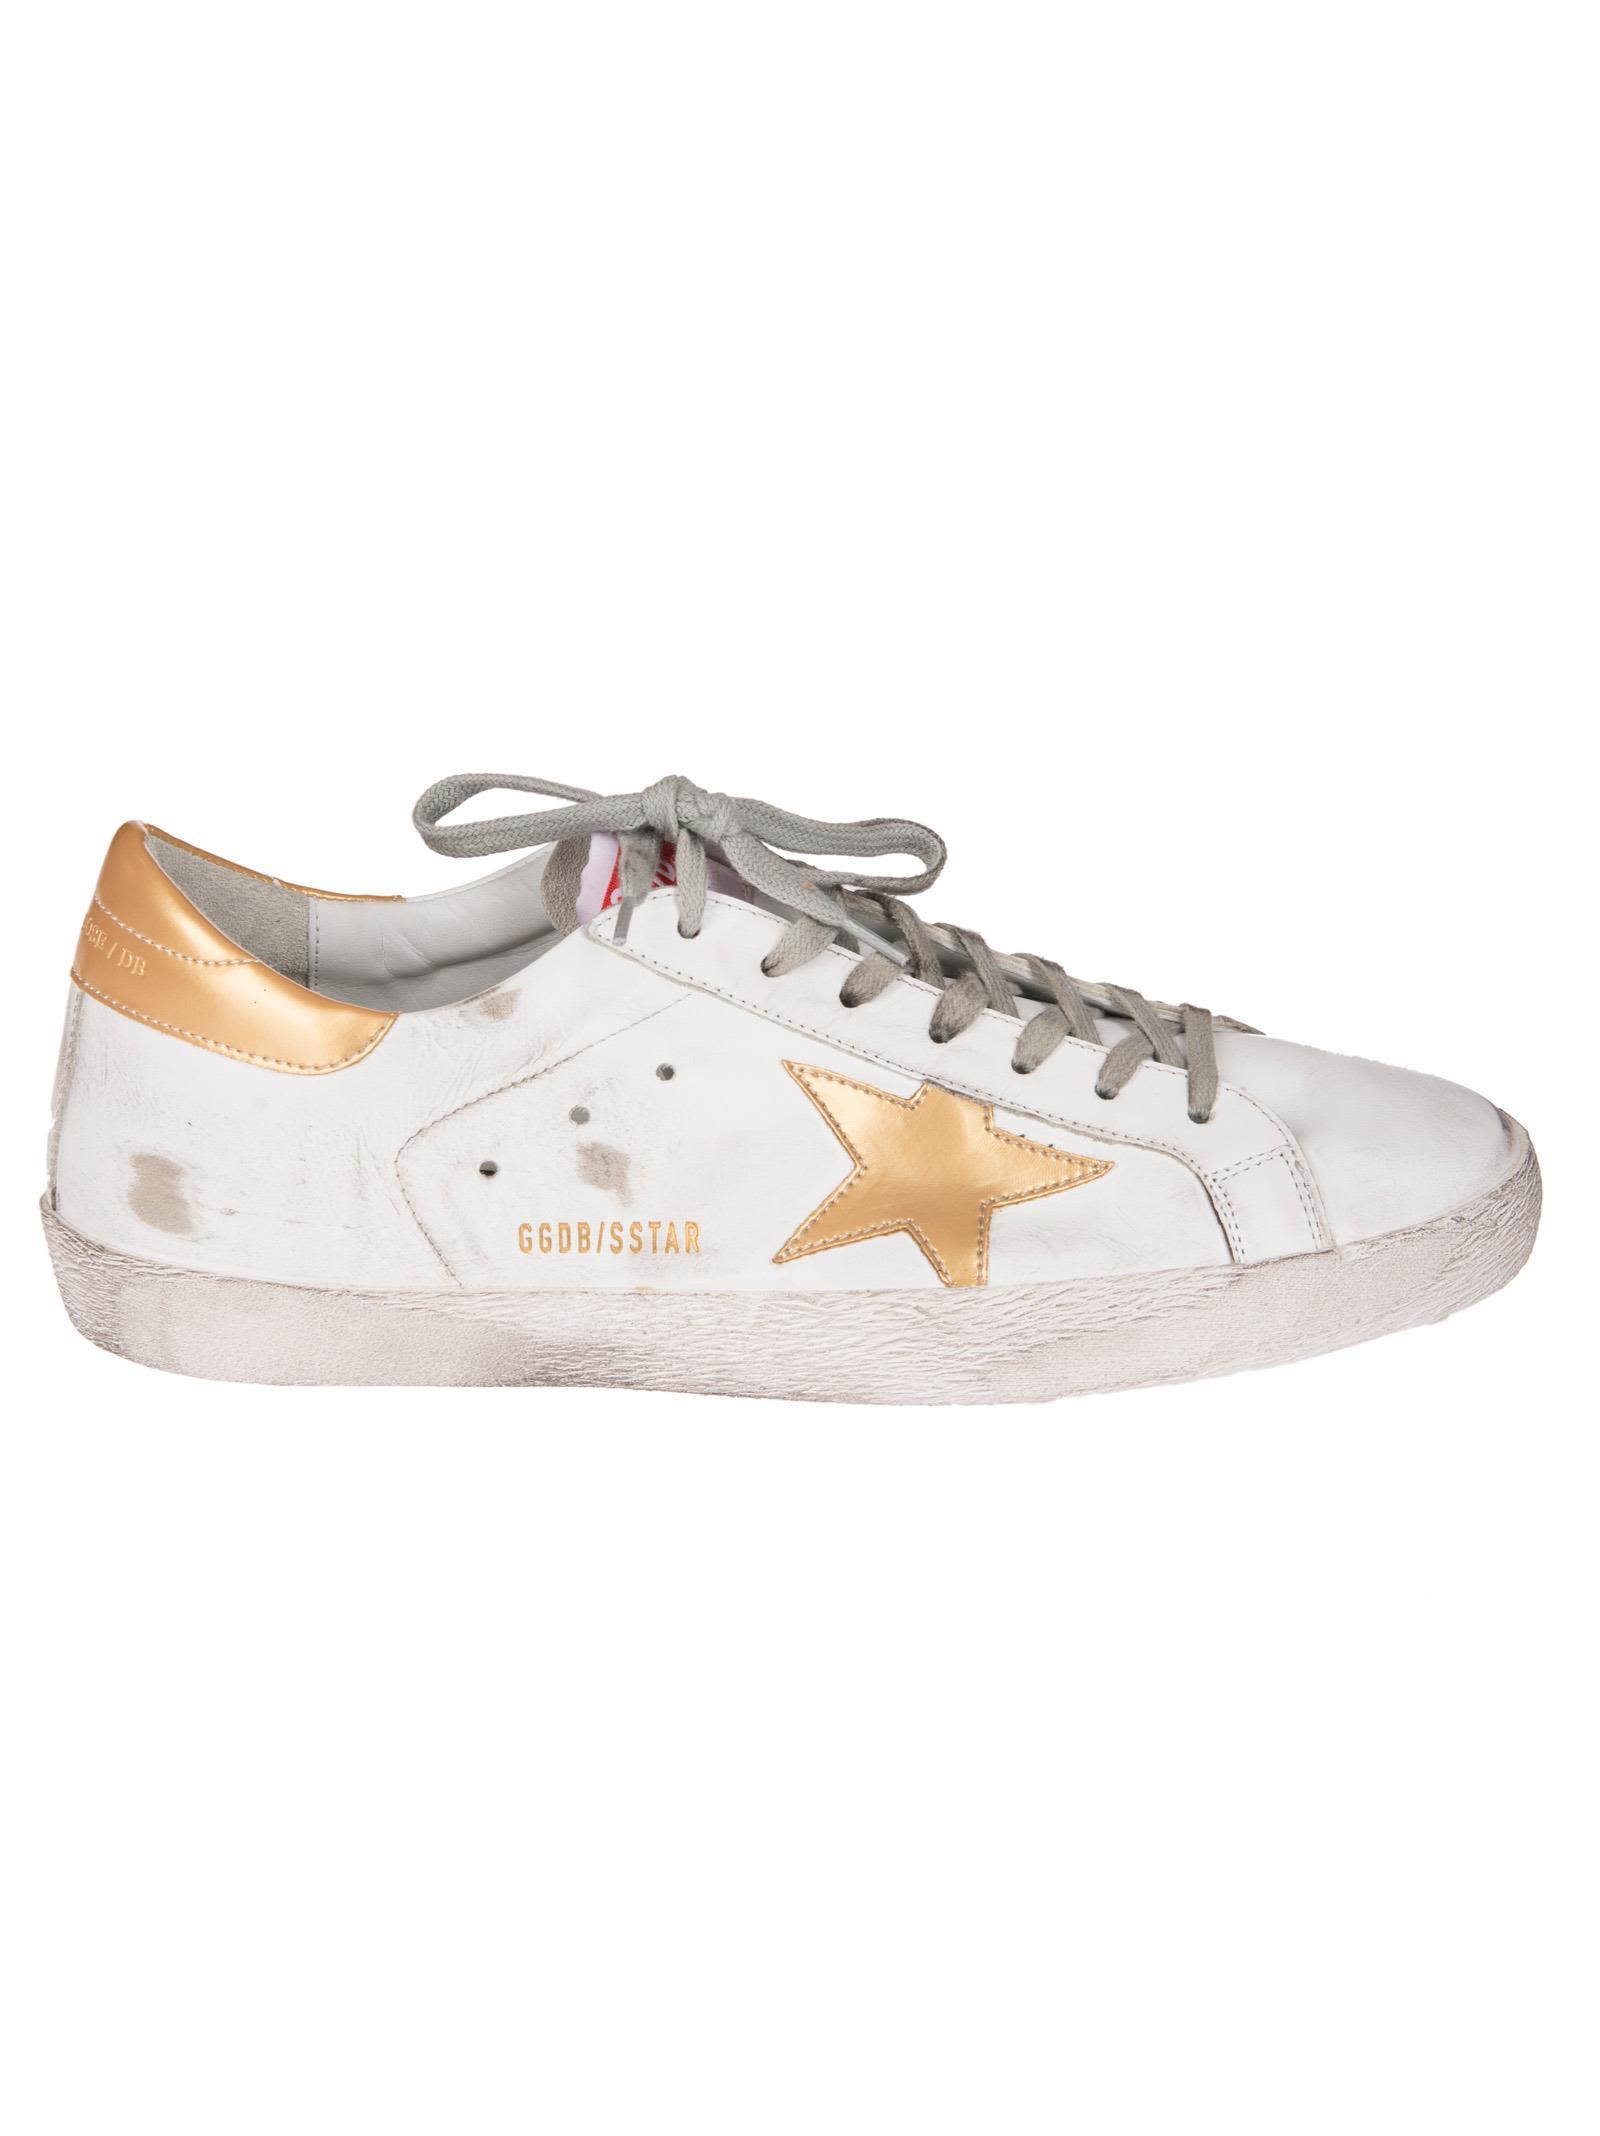 Golden Goose Superstar Sneakers In White-gold Star | ModeSens